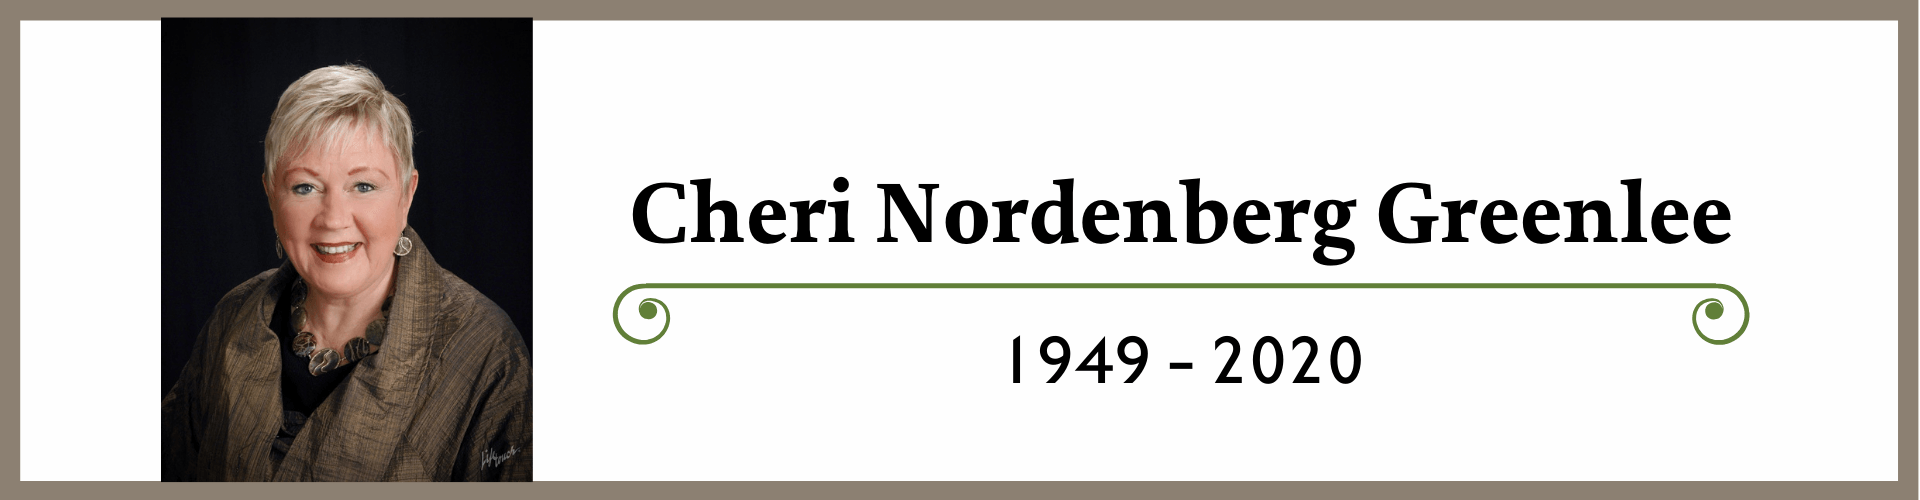 Cheri Nordenberg Greenlee - 1949-2020